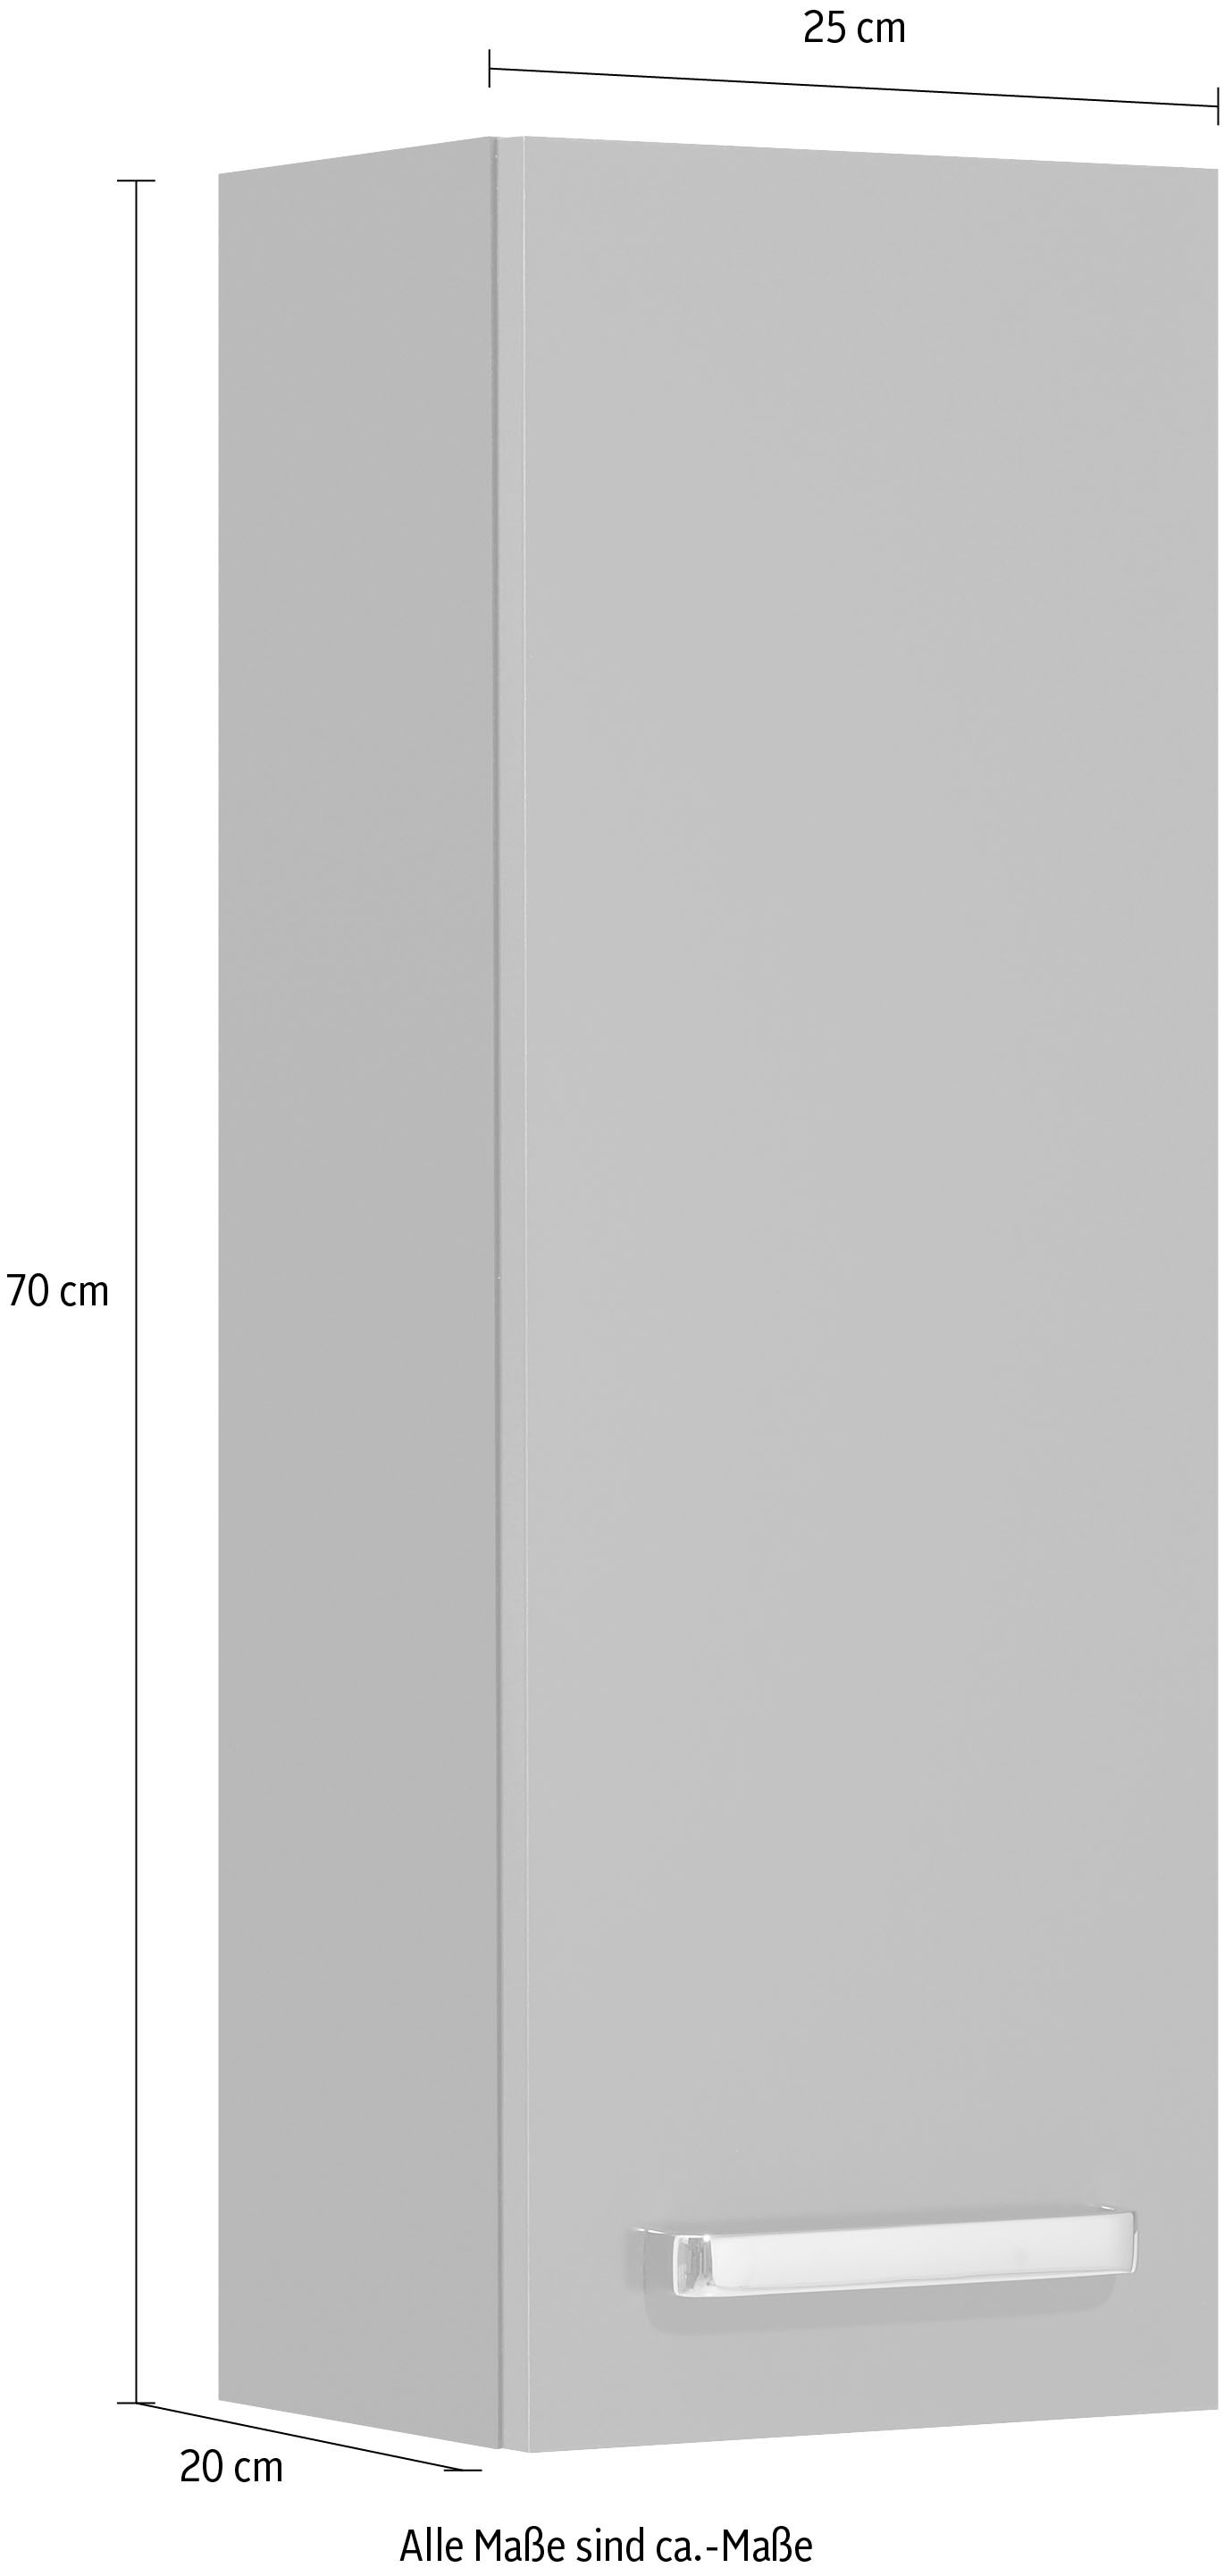 Saphir Hängeschrank »Quickset Wand-Badschrank 25 cm breit mit 1 Tür und 2 Einlegeböden«, Badezimmer-Hängeschrank inkl. Türdämpfer, Griffe in Chrom Glanz